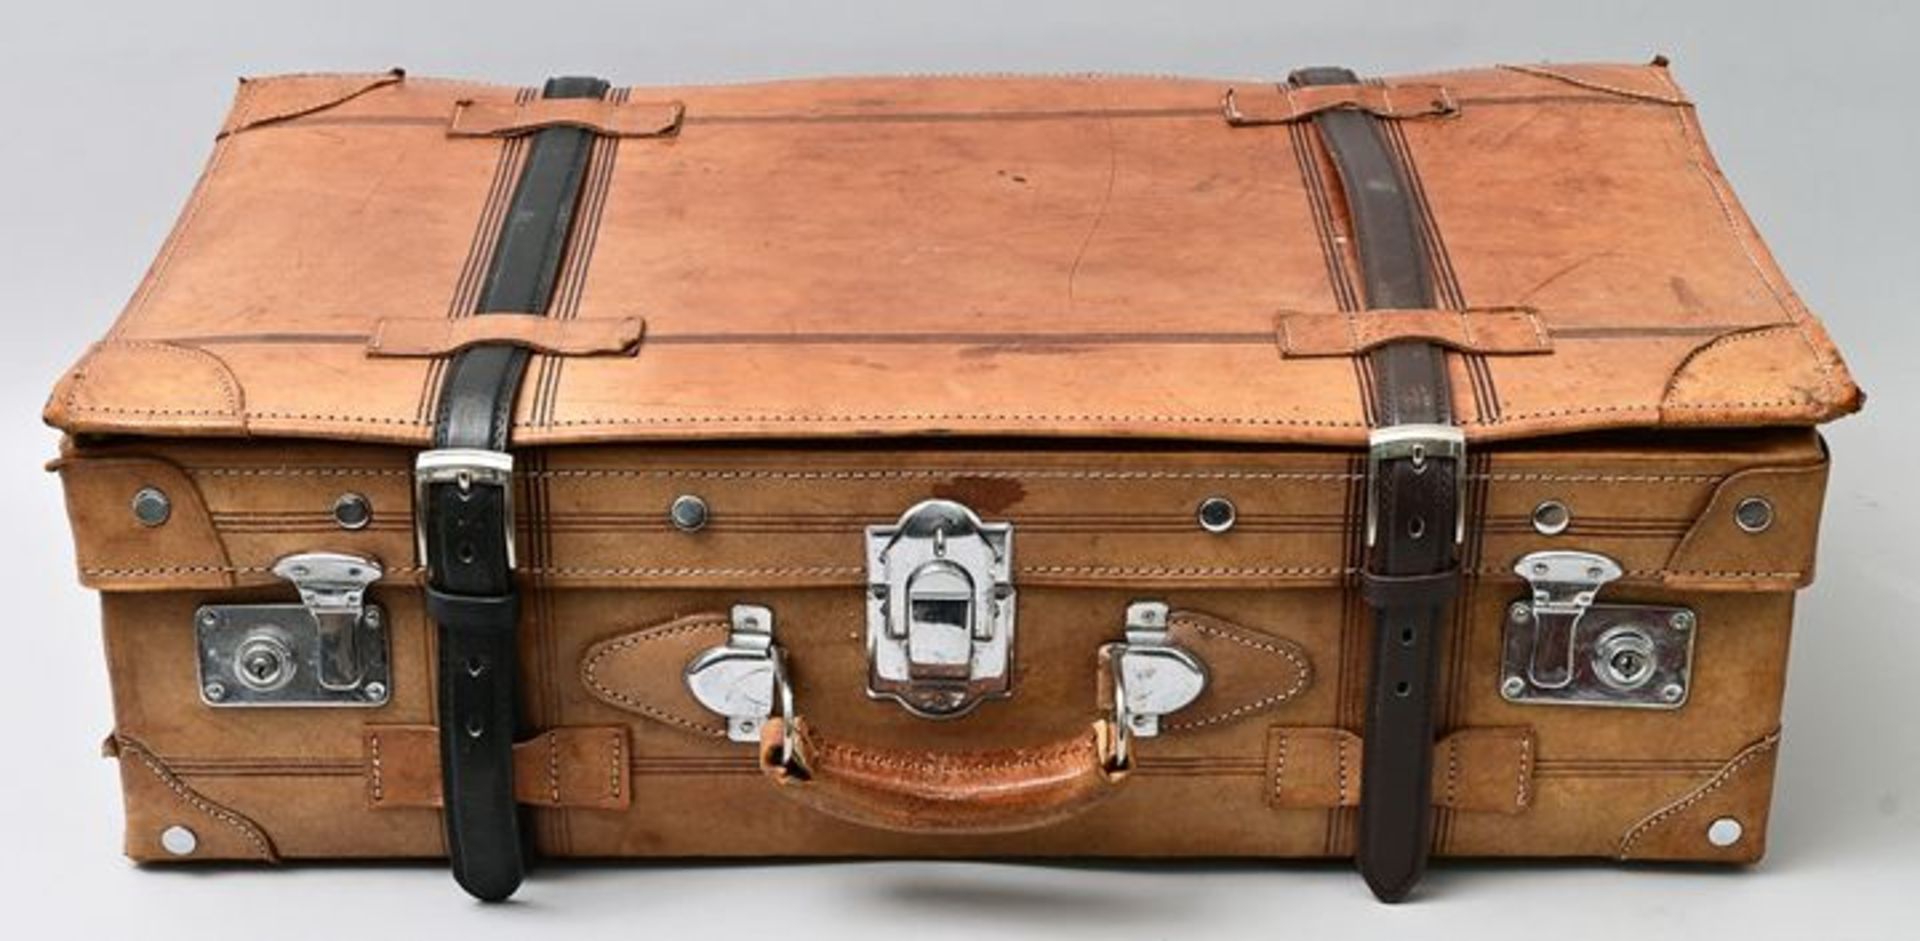 Reisekoffer/ suitcase